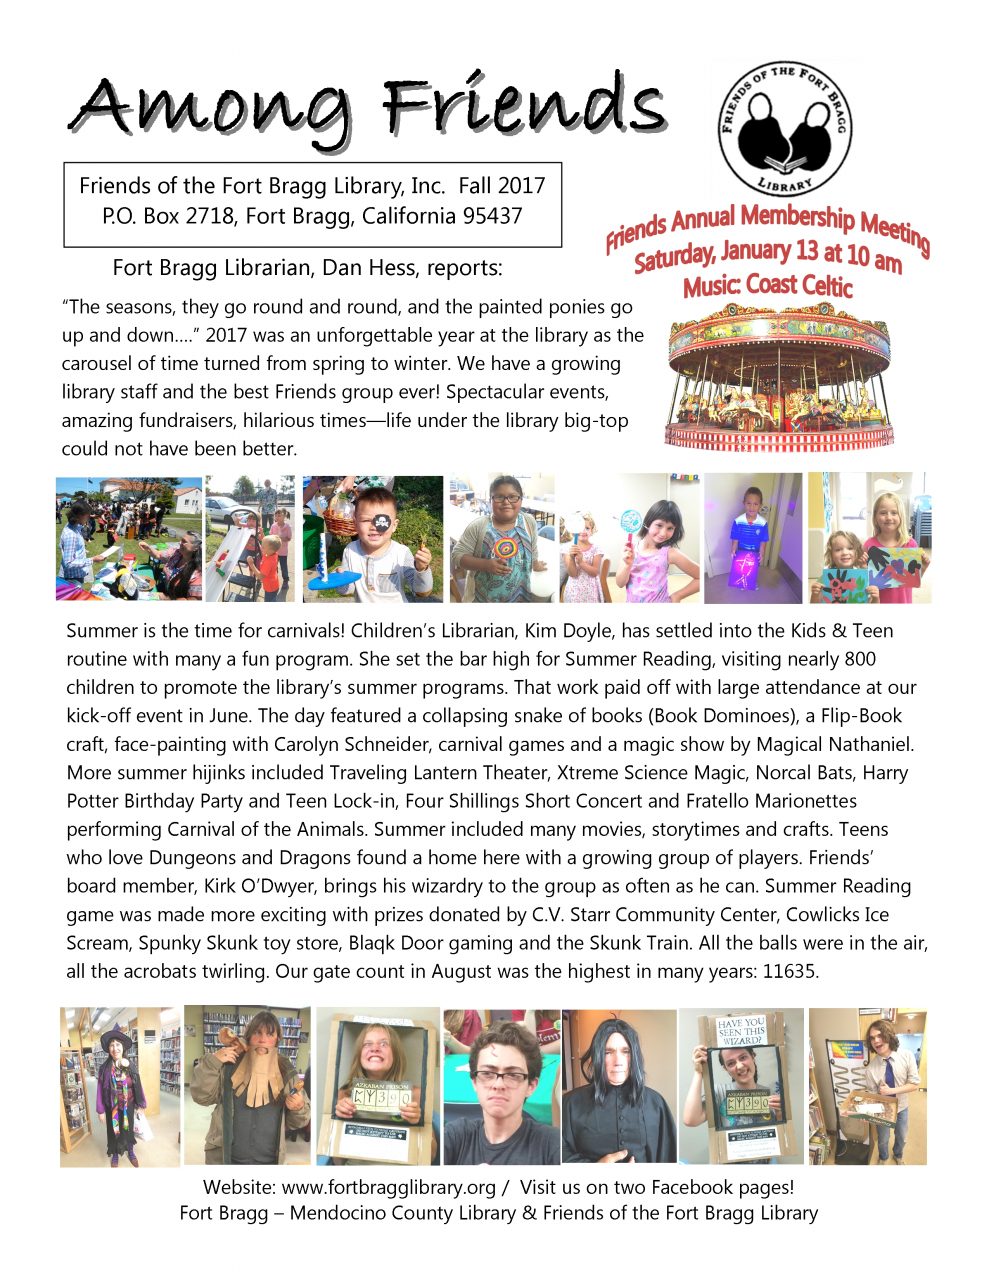 Among Friends Newsletter - Fall 2017